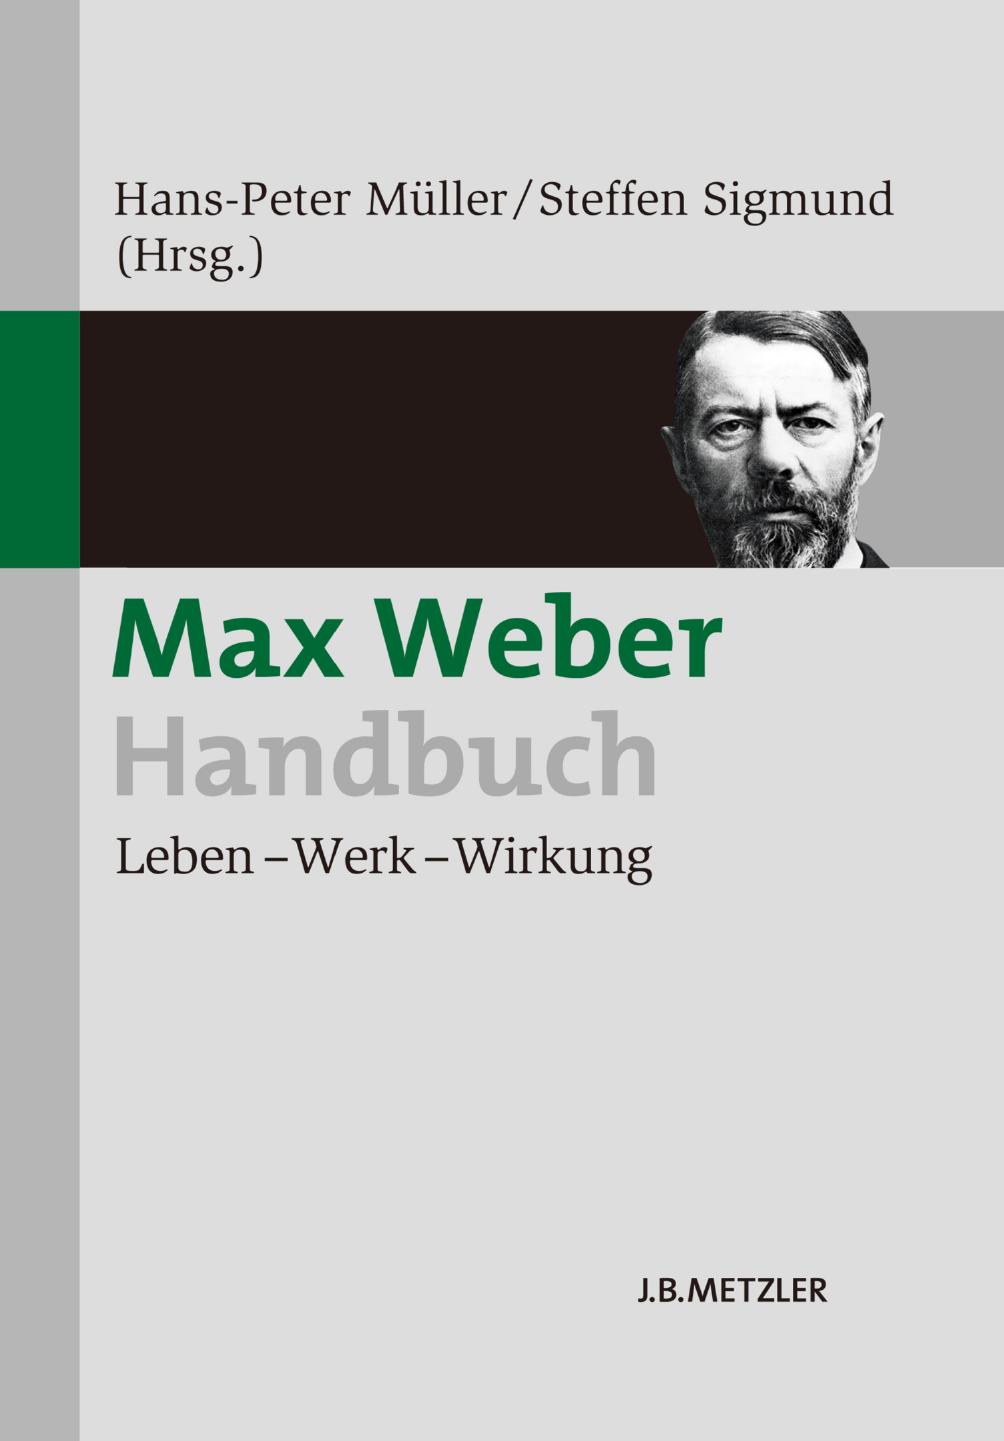 Max Weber-Handbuch: Leben – Werk – Wirkung